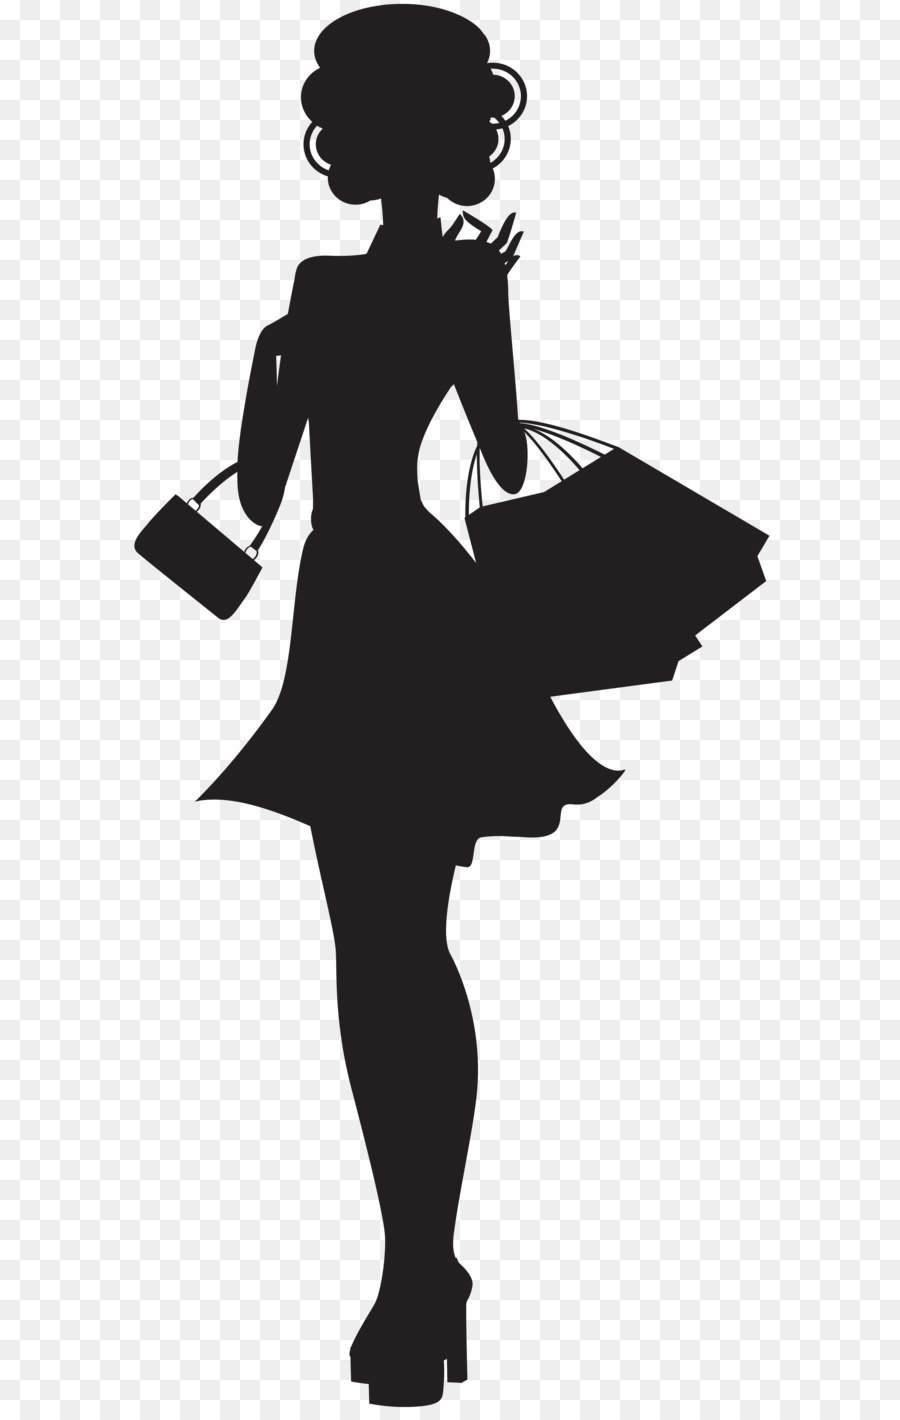 Silhouette Frau Clip art - Shopping Woman Silhouette PNG clipart